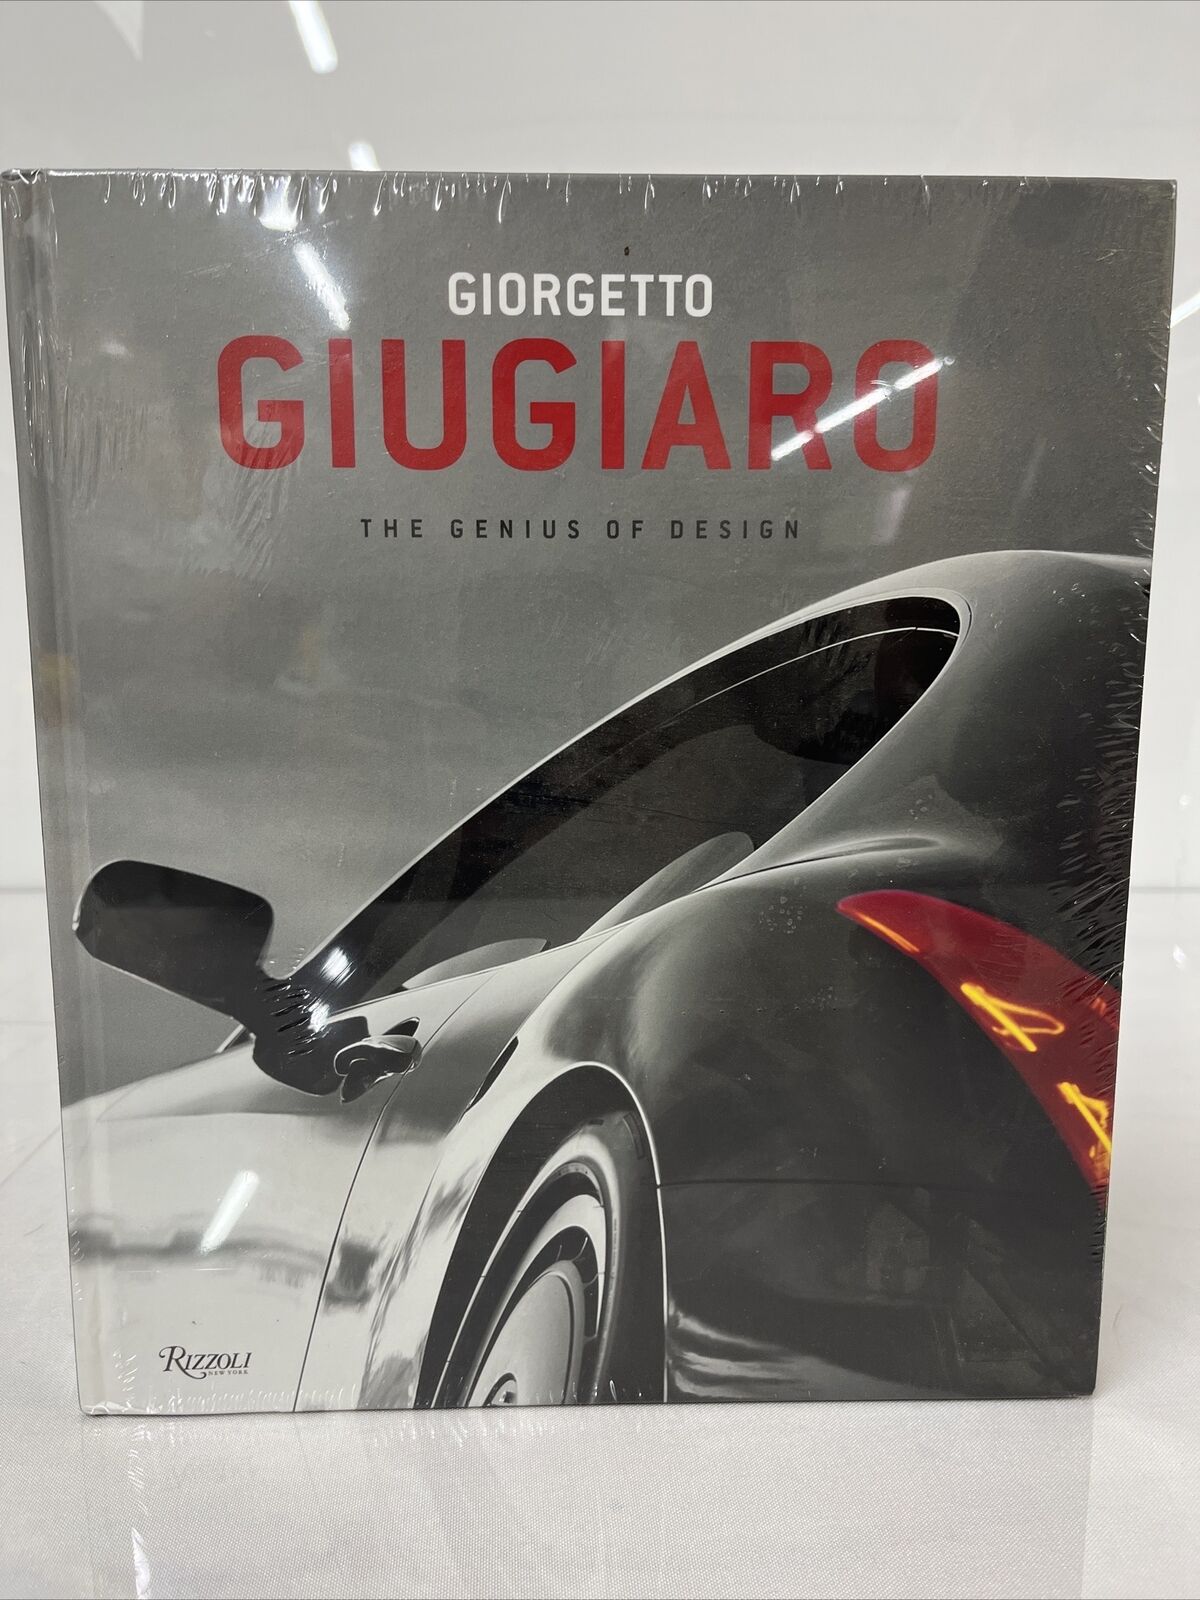 NEW - Giorgetto Giugiaro The Genius of Design, Rizzoli